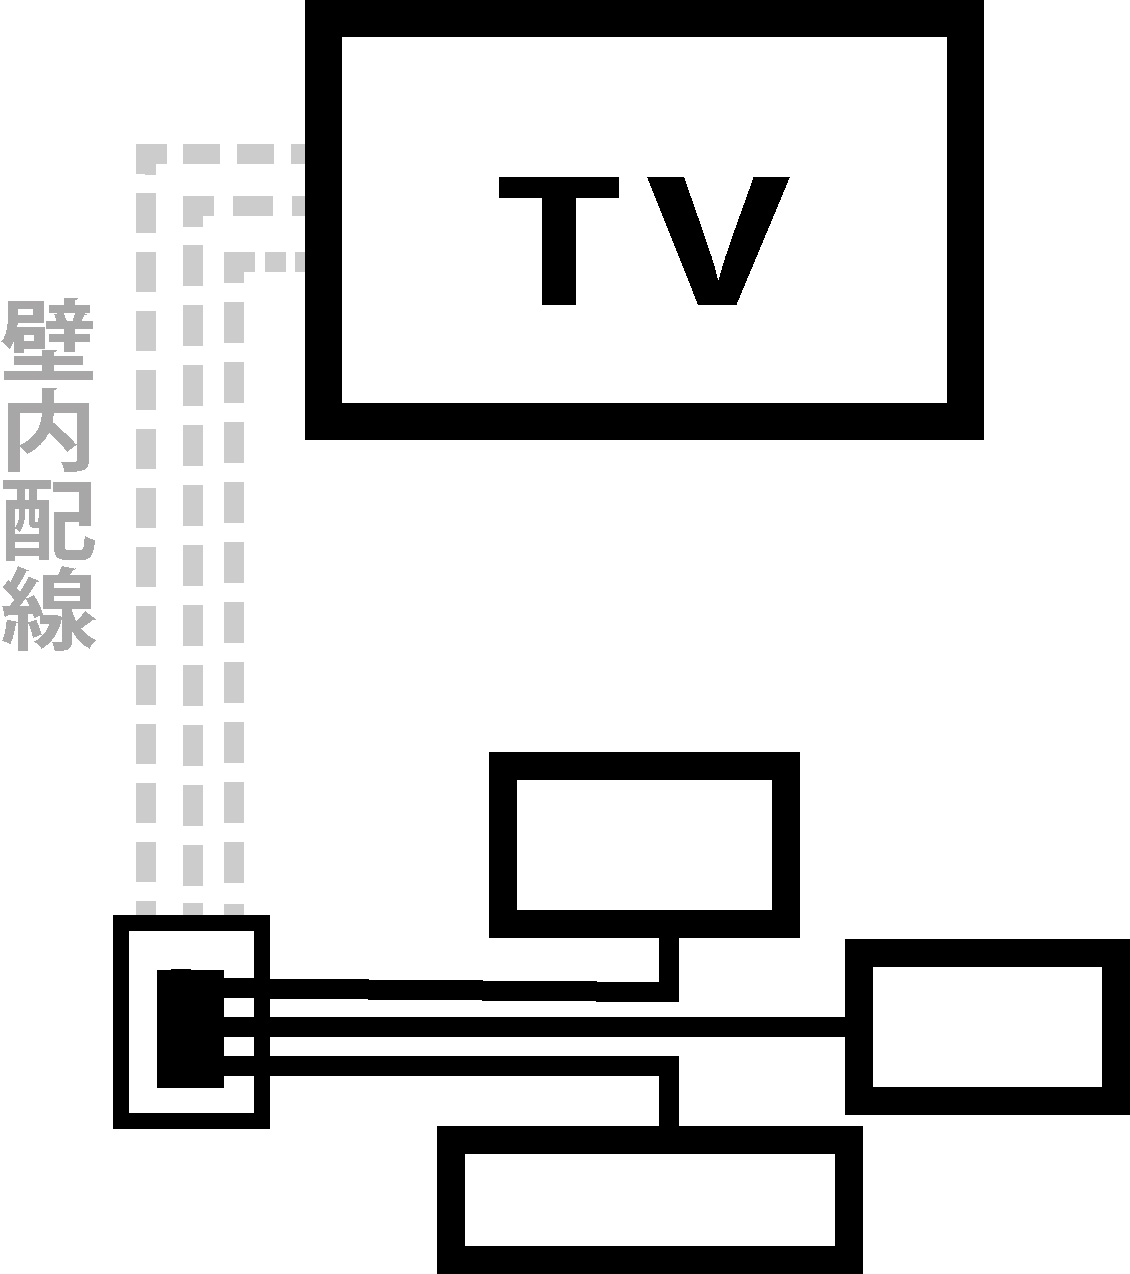 カトー電器の壁掛けテレビではテレビからの配線は極力壁内を通します。そして離れた場所にコンセントパネルを